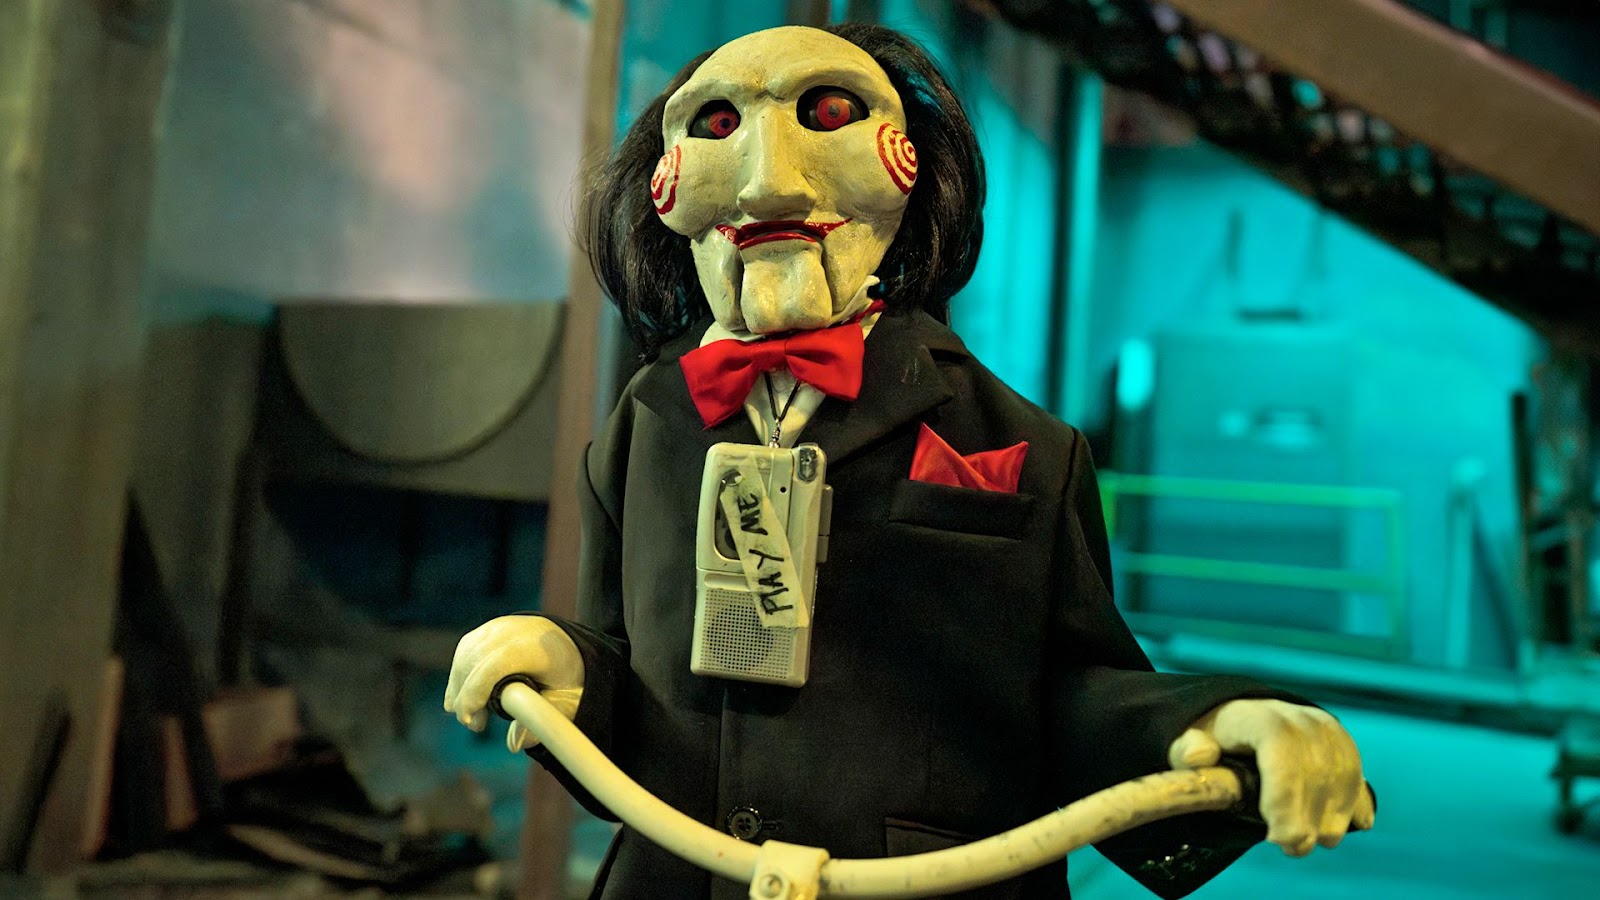 El personaje Billy de la película de terror Saw, está andando en triciclo con su clásico esmoquín negro, humita roja y una máscara blanca con detalles de espirales en las mejillas.